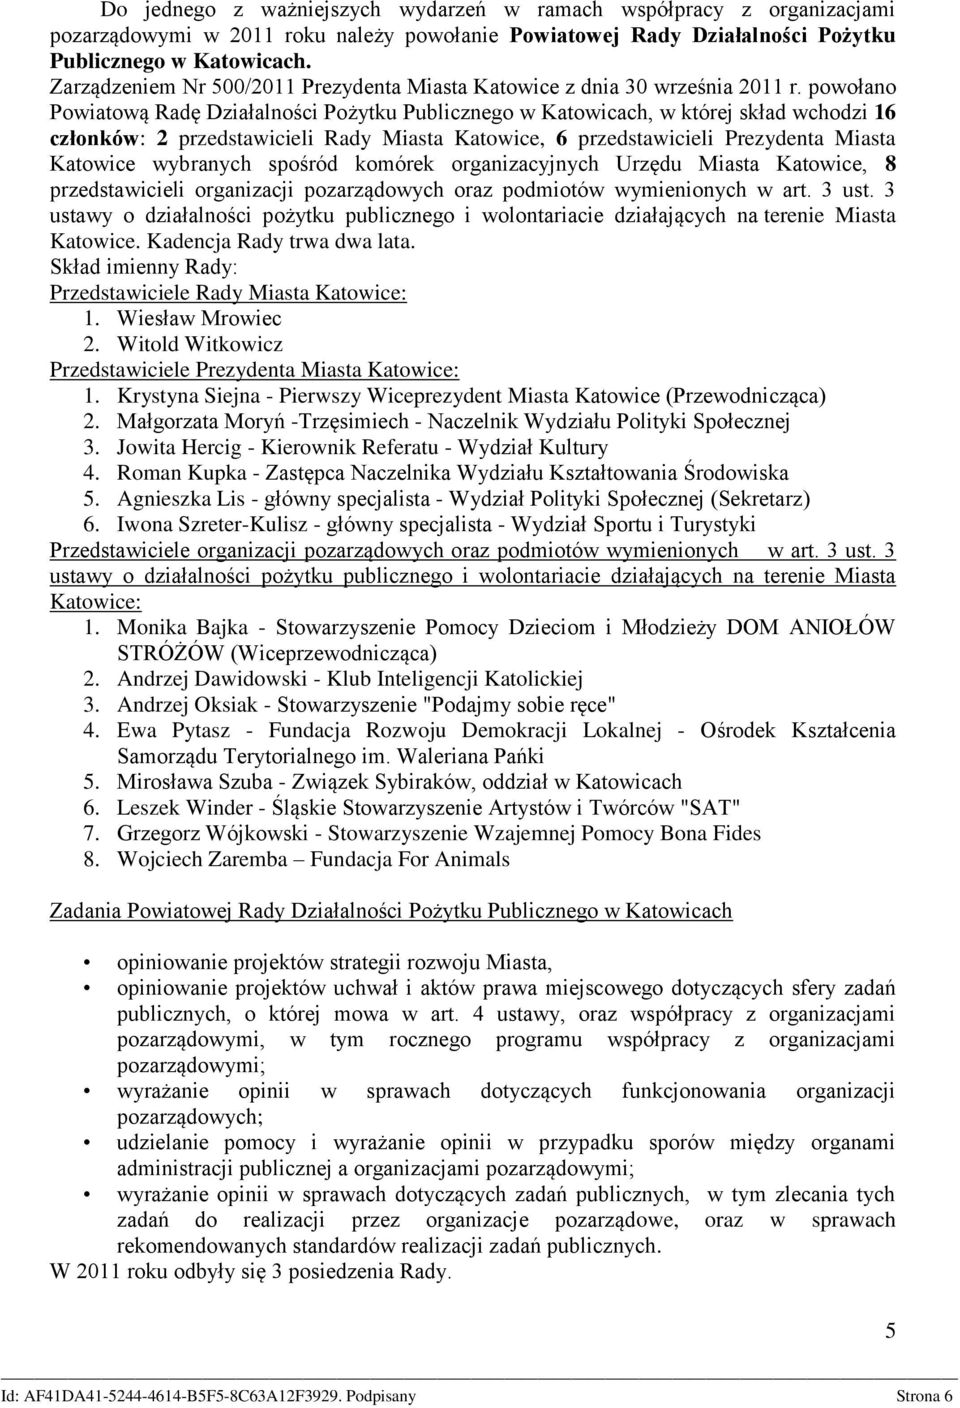 powołano Powiatową Radę Działalności Pożytku Publicznego w Katowicach, w której skład wchodzi 16 członków: 2 przedstawicieli Rady Miasta Katowice, 6 przedstawicieli Prezydenta Miasta Katowice